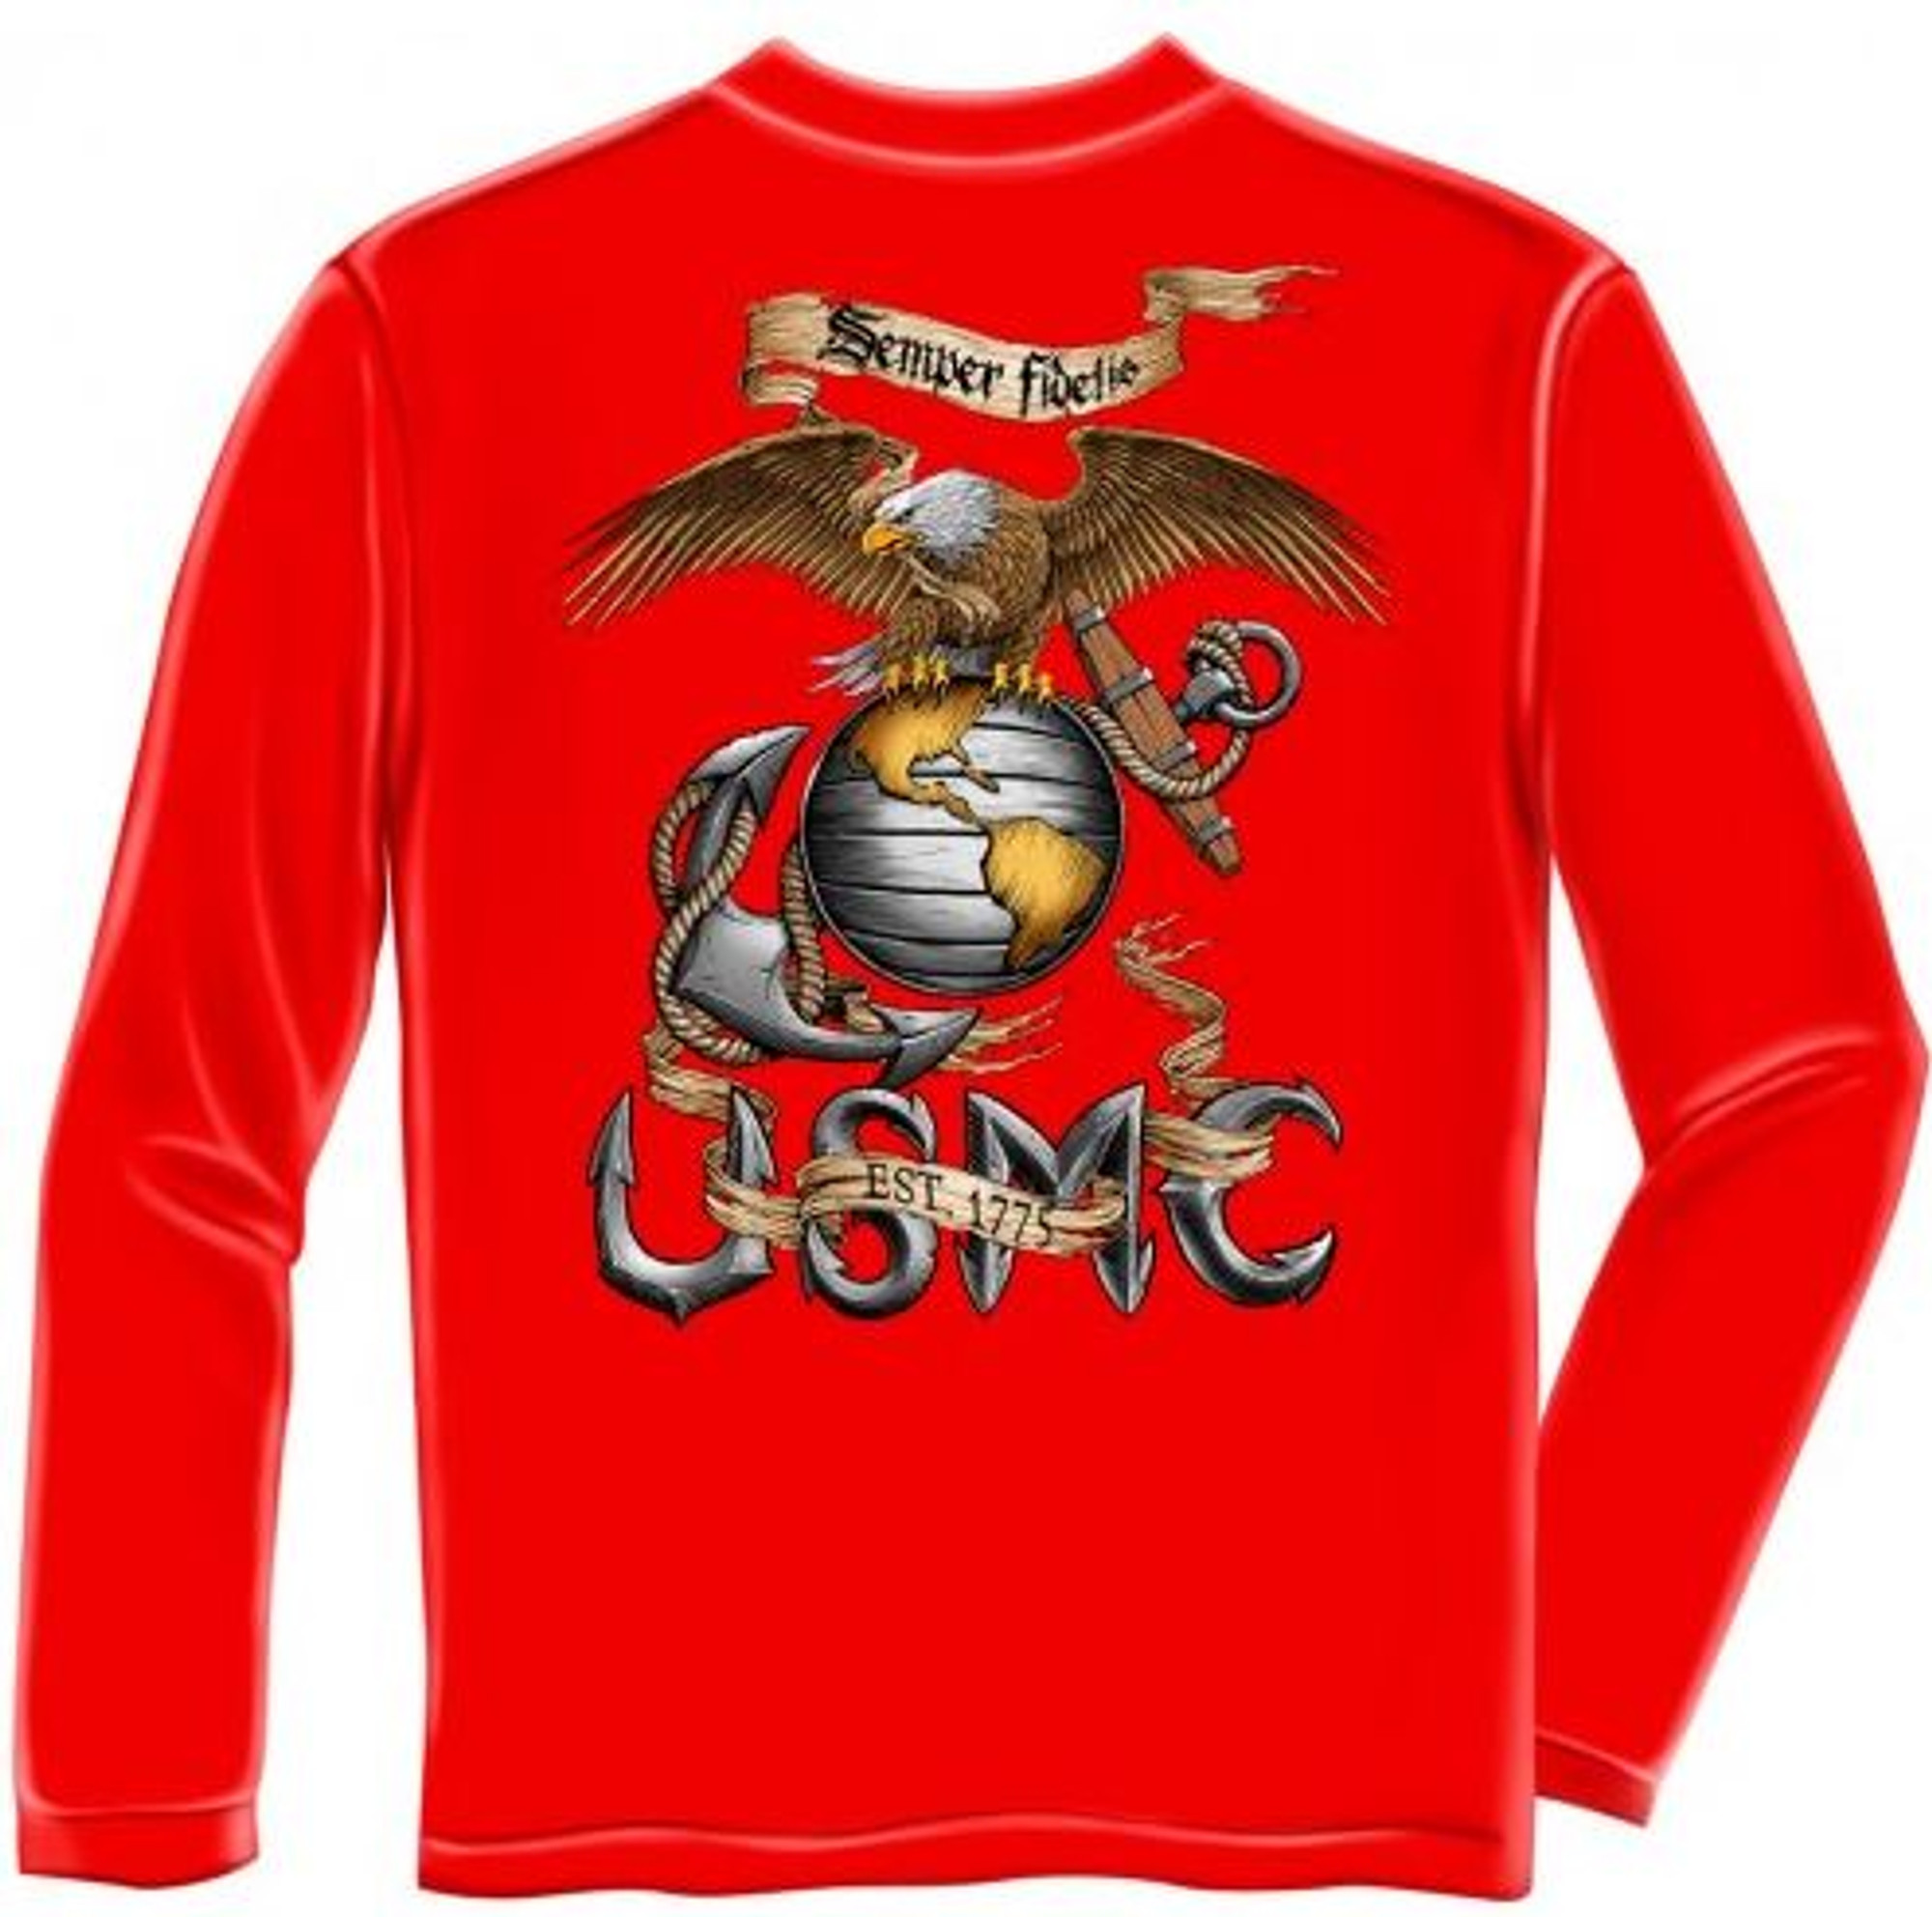 USMC "Semper Fidetis - Red" Long Sleeve T-Shirt